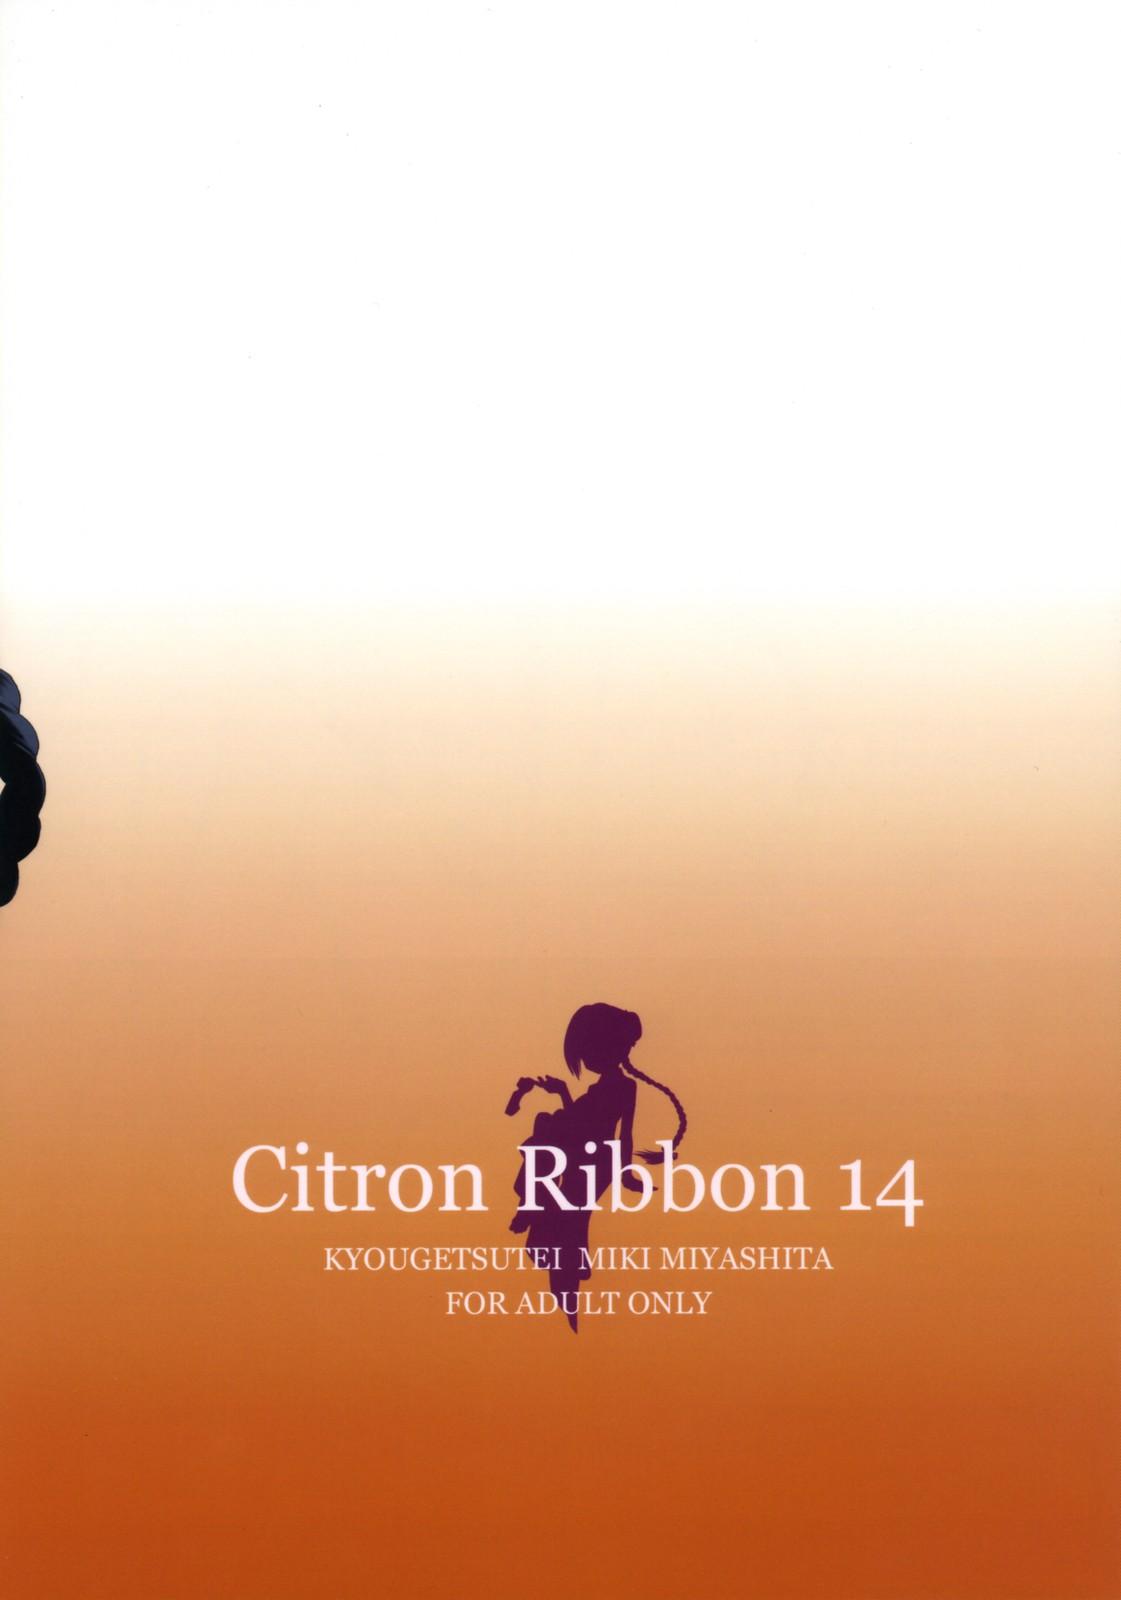 Citron Ribbon 14 10